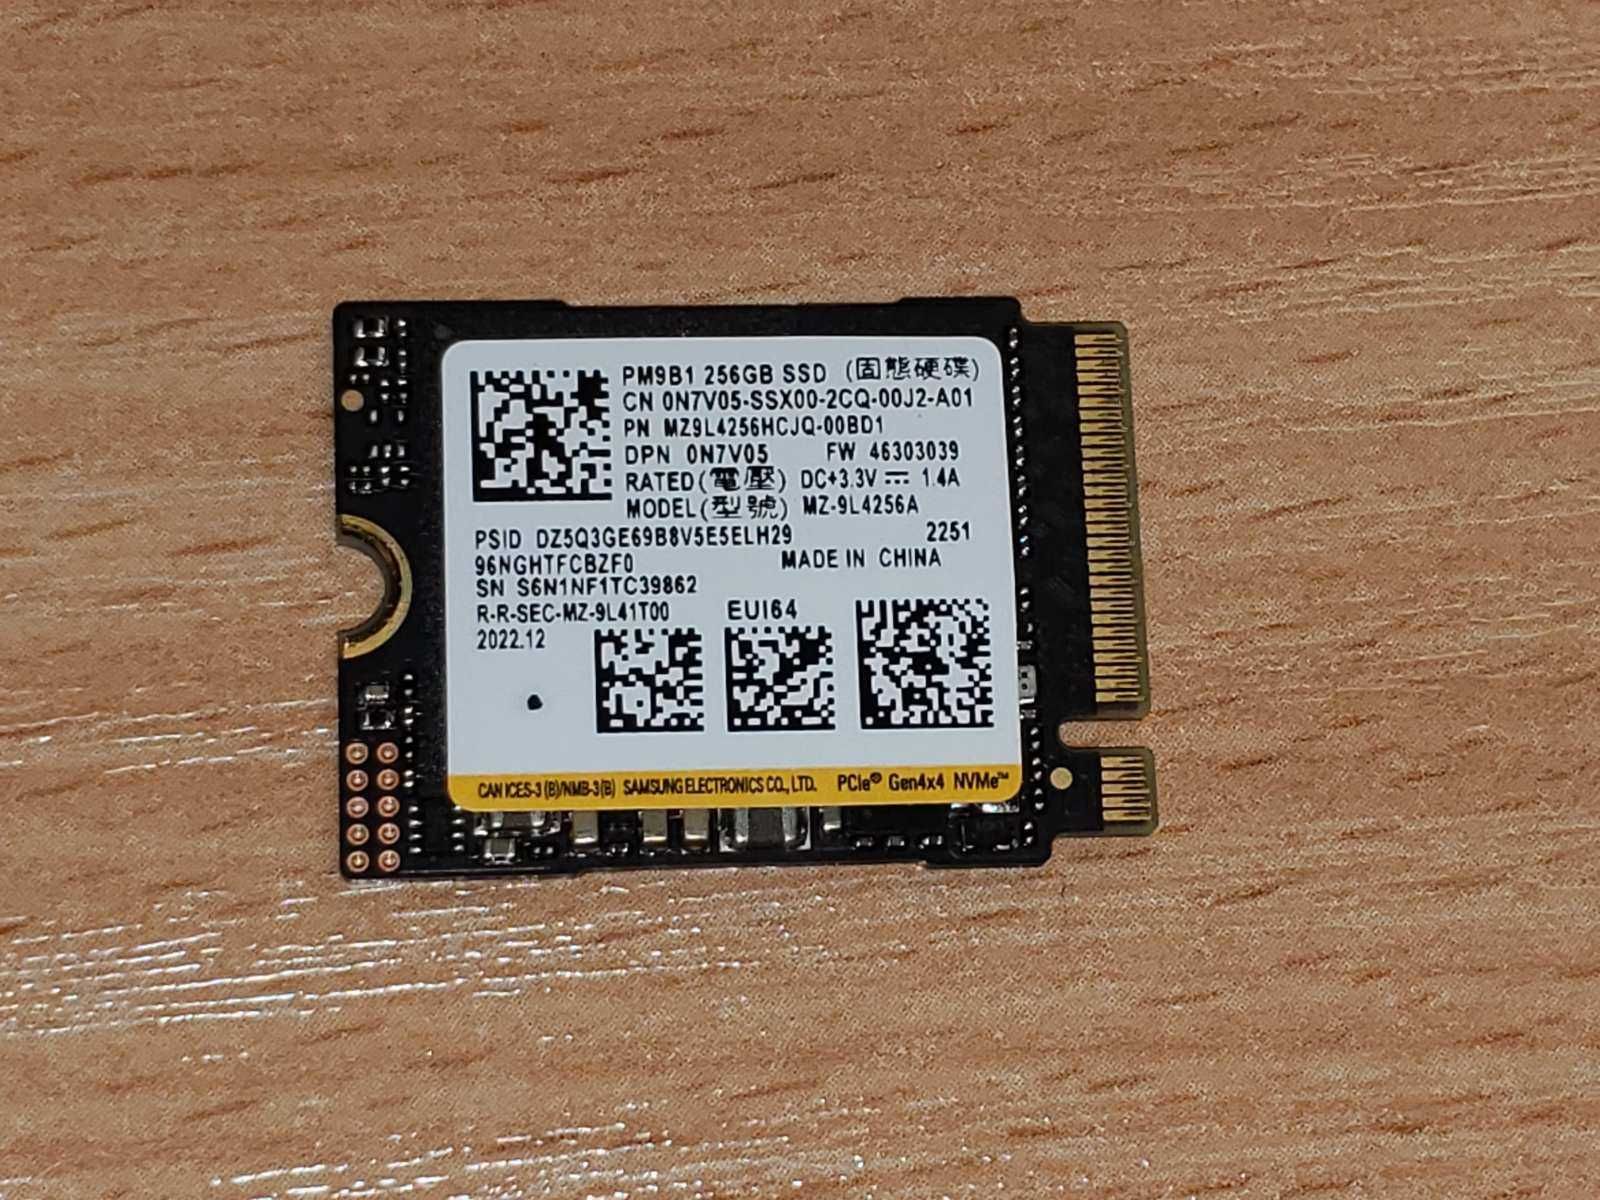 SSD 256gb Samsung PM9B1 Gen4 x4 NVMe M.2 2230. состояние нового.